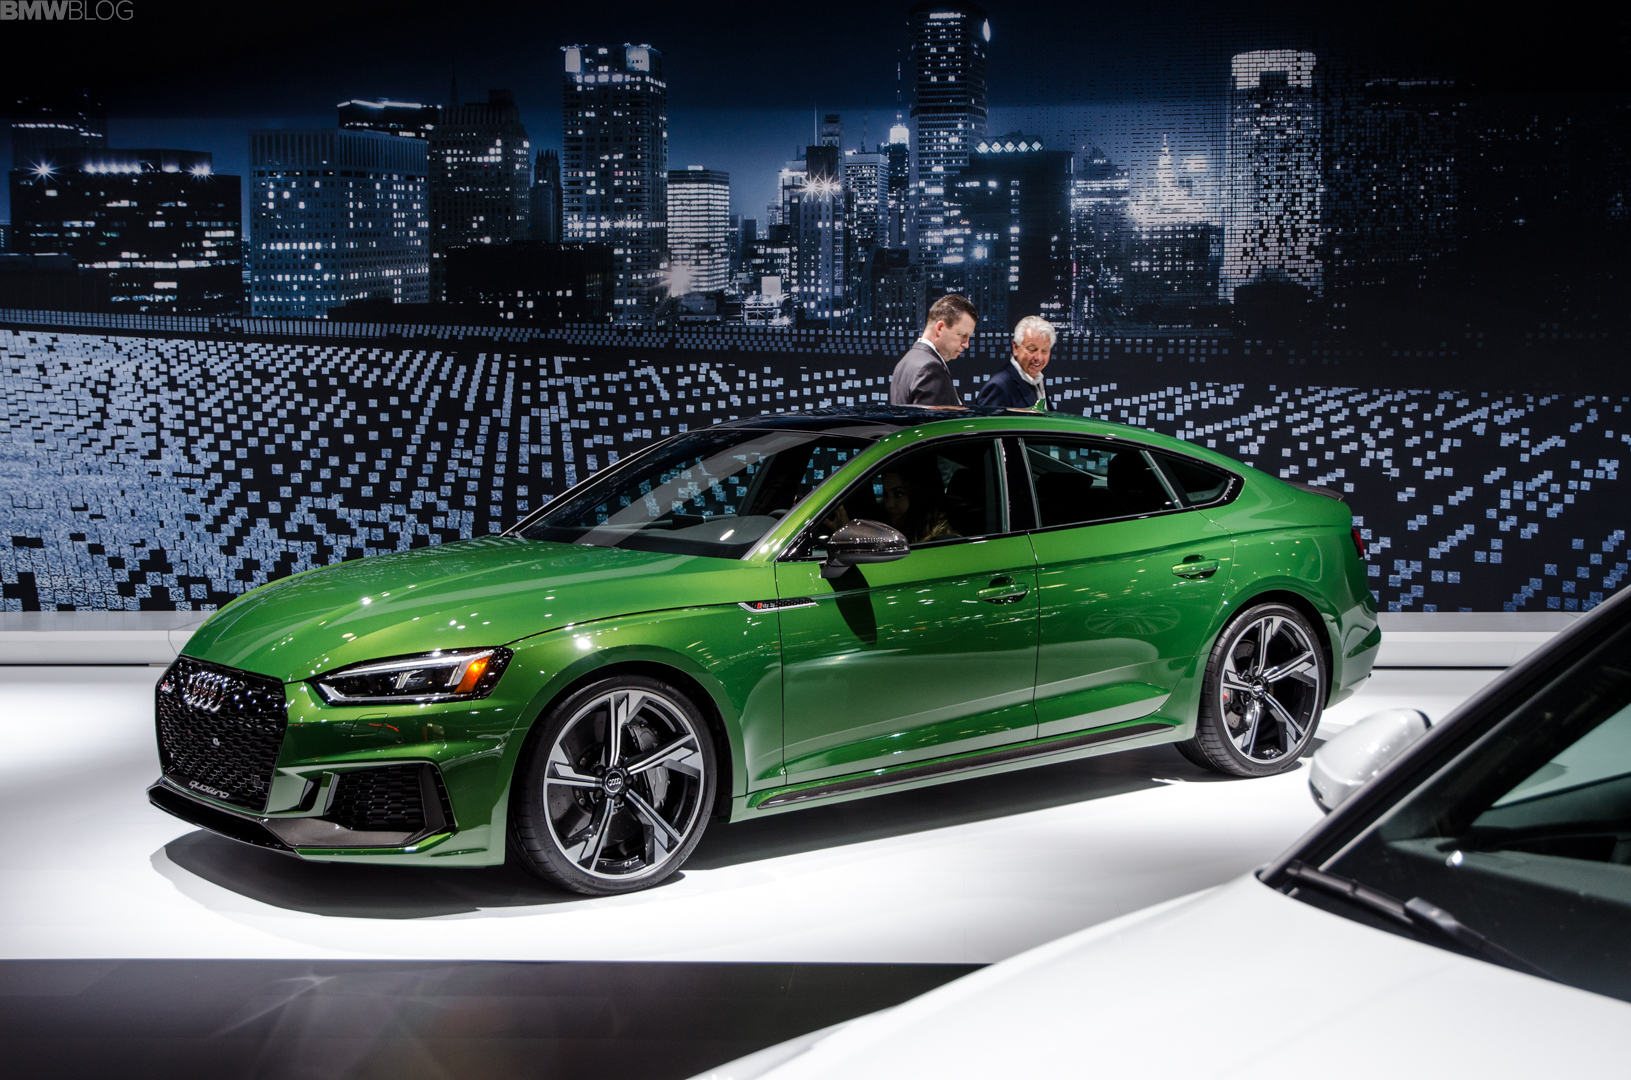 Ｄセグメント４ドアクーペの最強マシン「Audi RS5 Sportback」が登場！BMWもM4グランクーペ出してくれないかなあ＾＾；